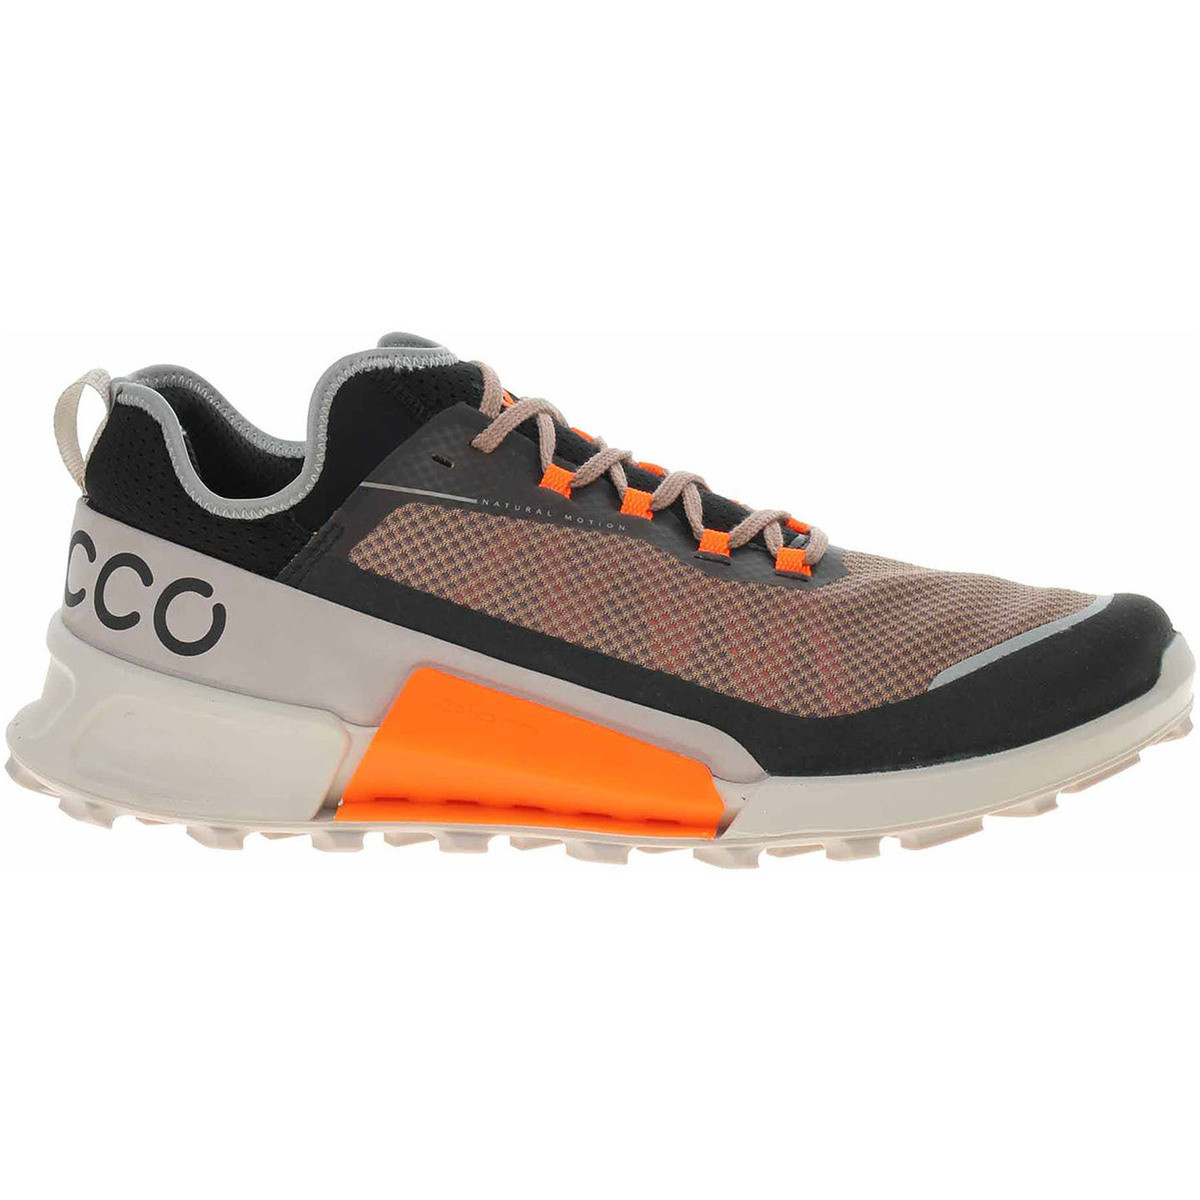 Ecco  Pánská obuv  Biom 2.1 X Country M 82280460268  Oranžová